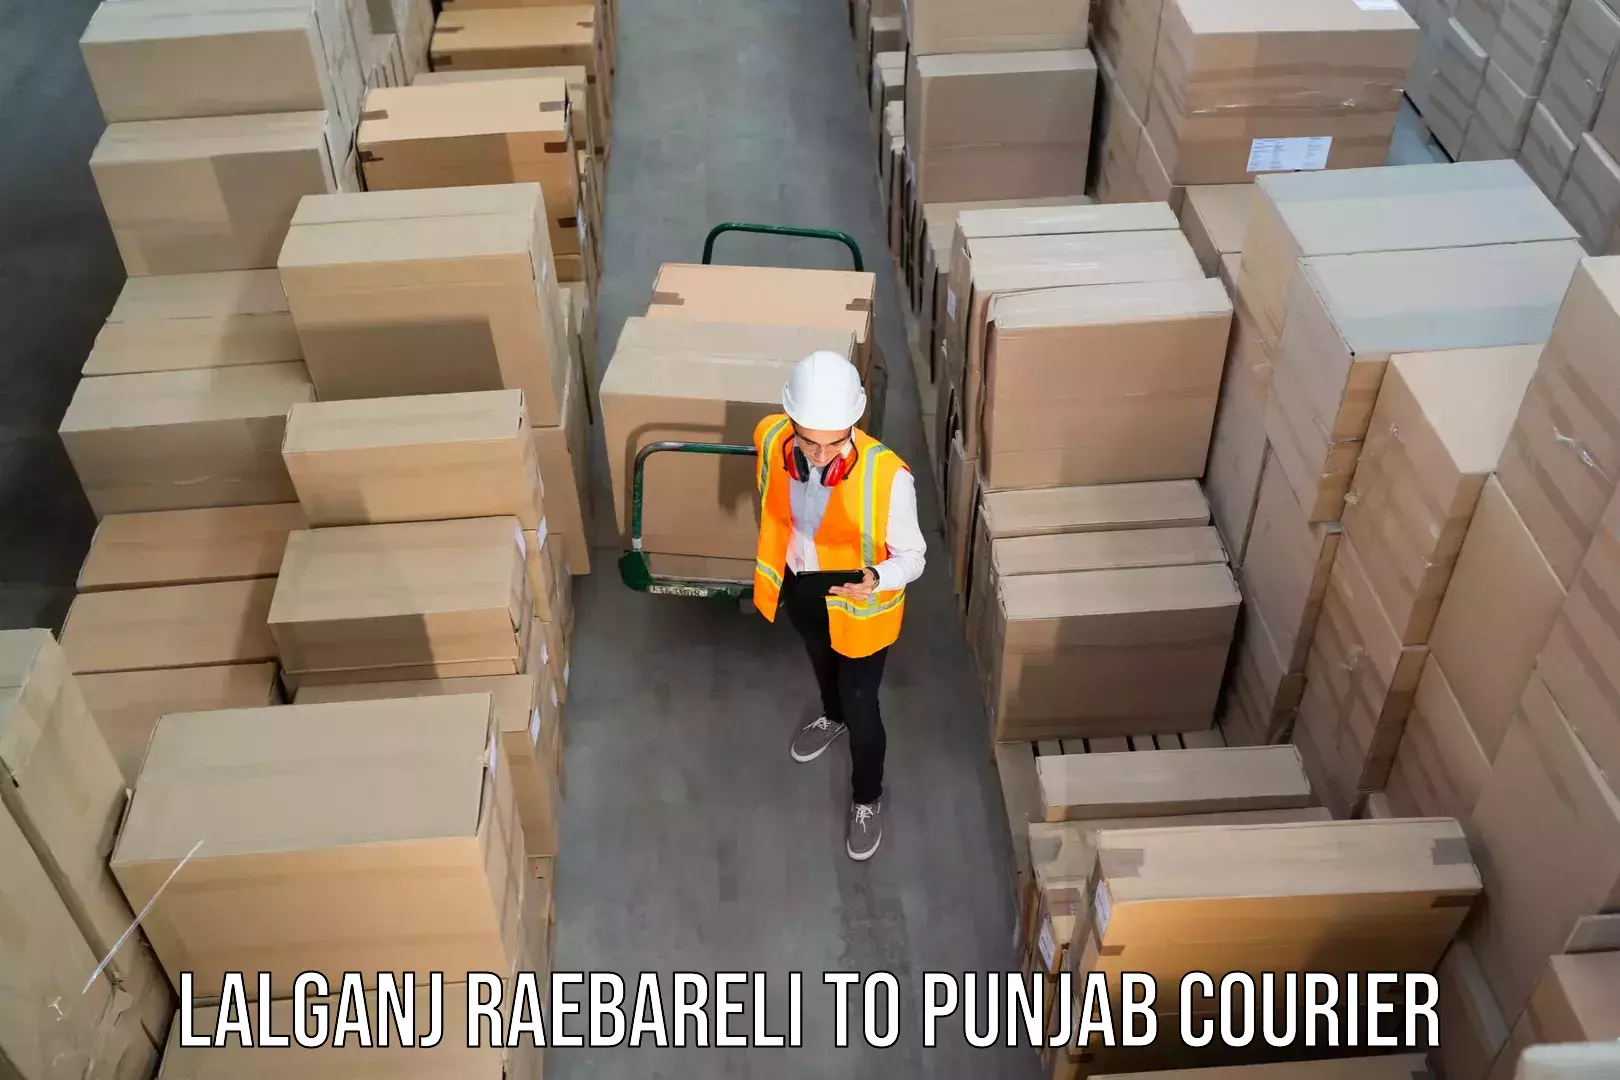 Digital shipping tools Lalganj Raebareli to Punjab